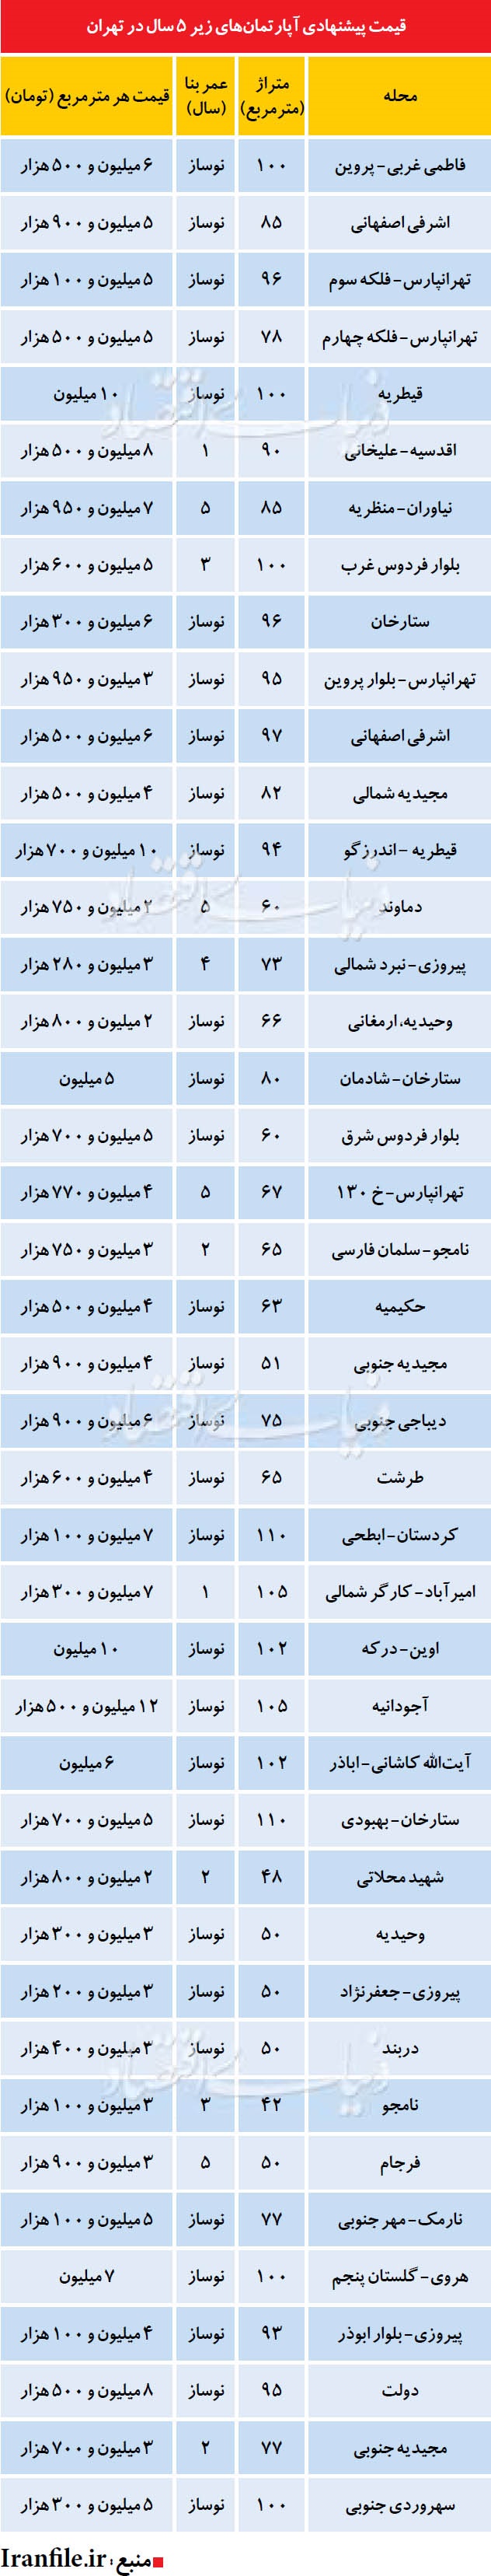 آپارتمان زیر 5 سال در تهران چند؟ + جدول